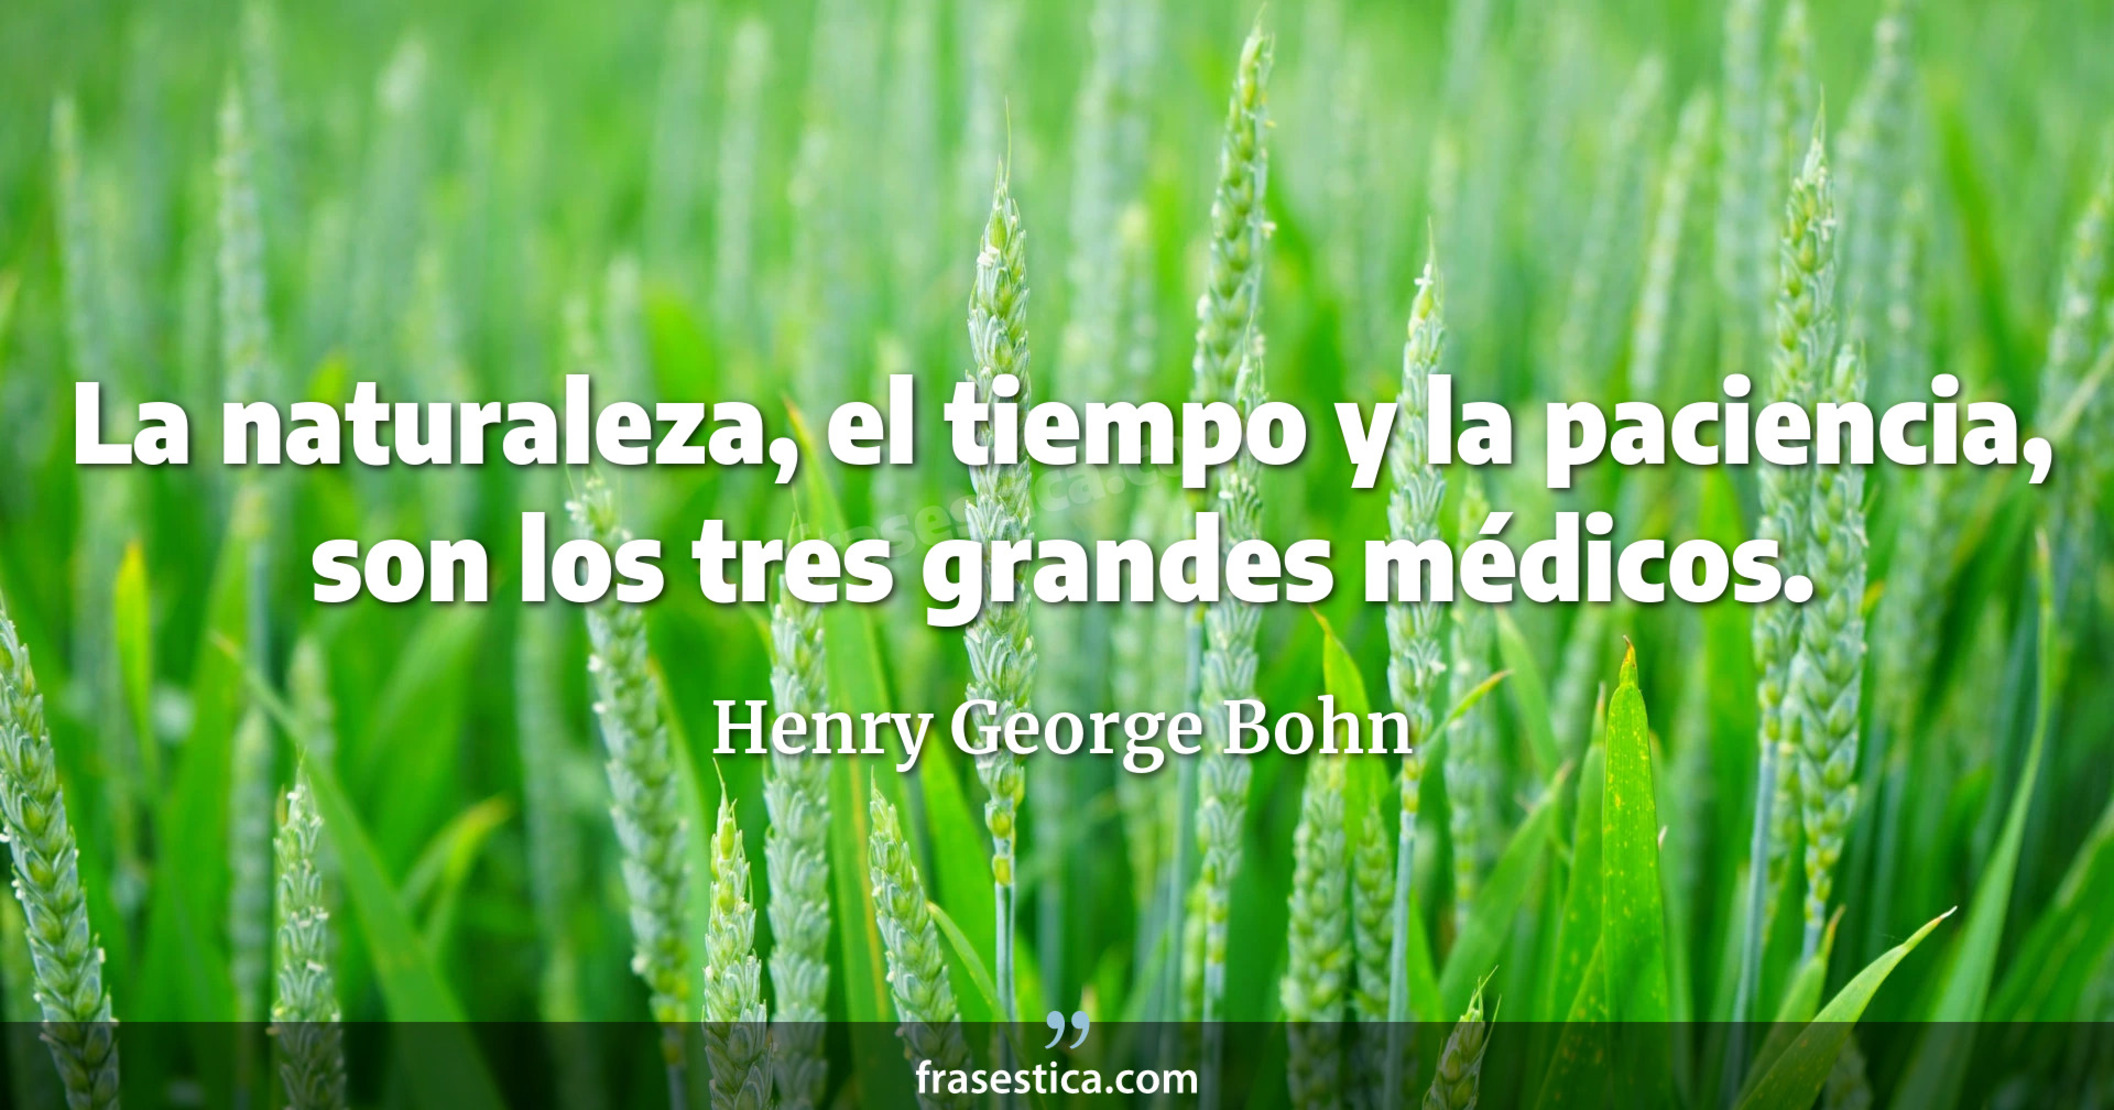 La naturaleza, el tiempo y la paciencia, son los tres grandes médicos. - Henry George Bohn